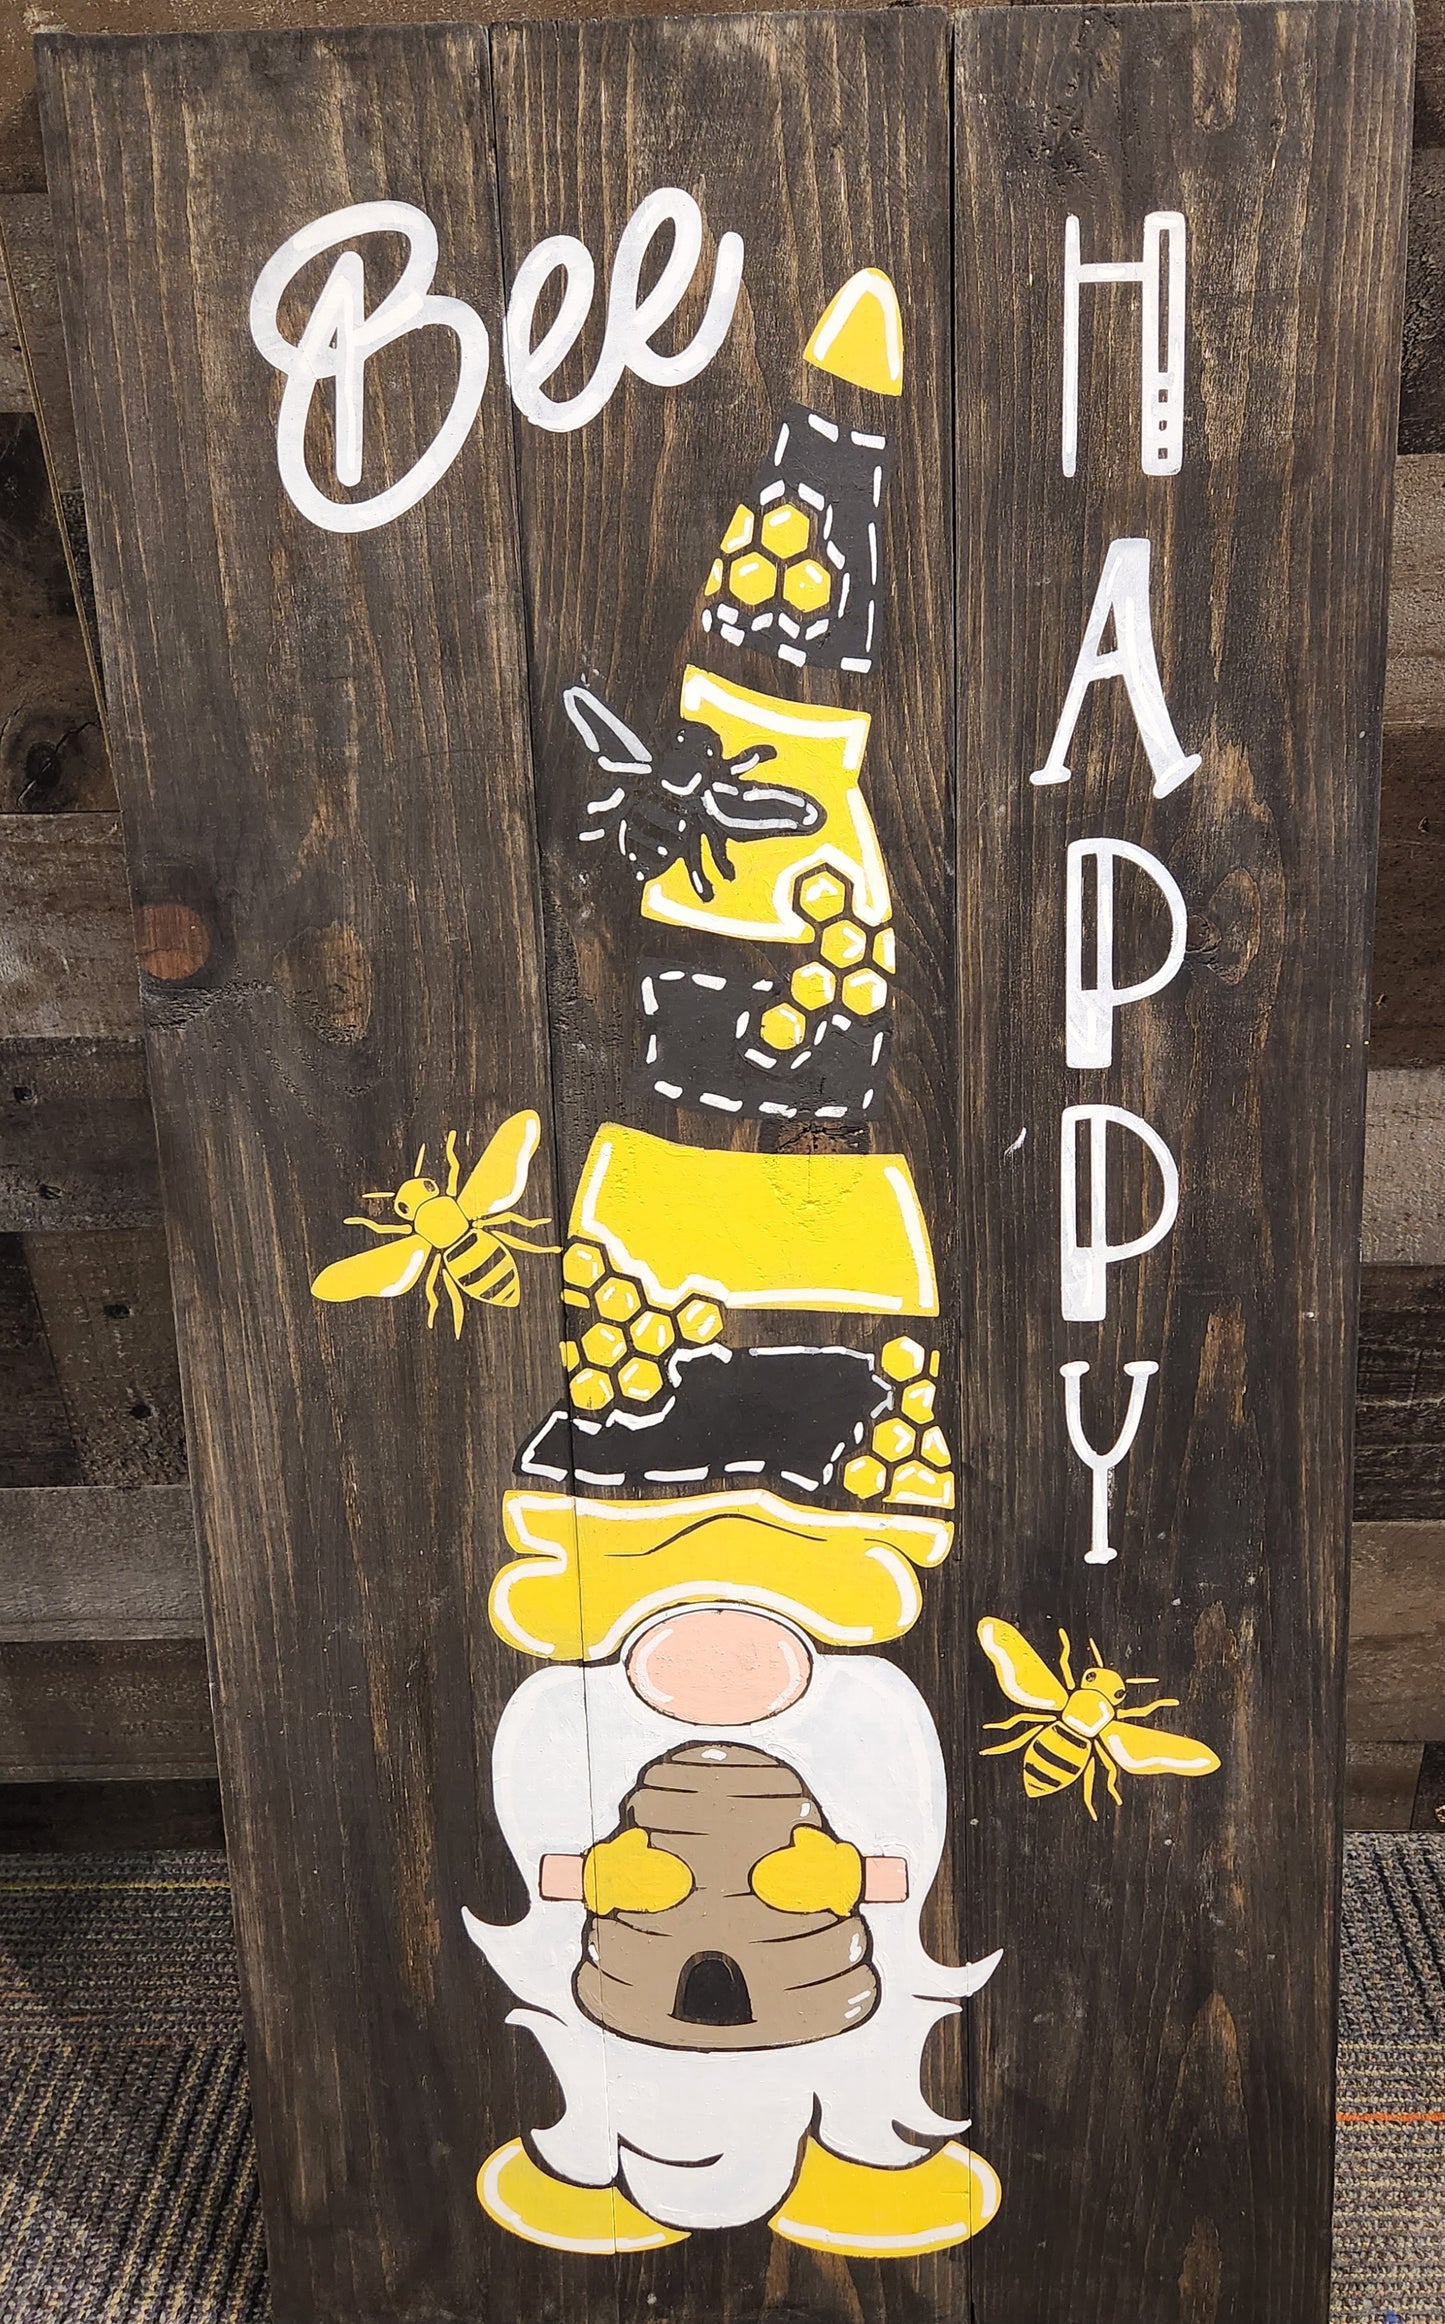 Bee Happy - NOCO